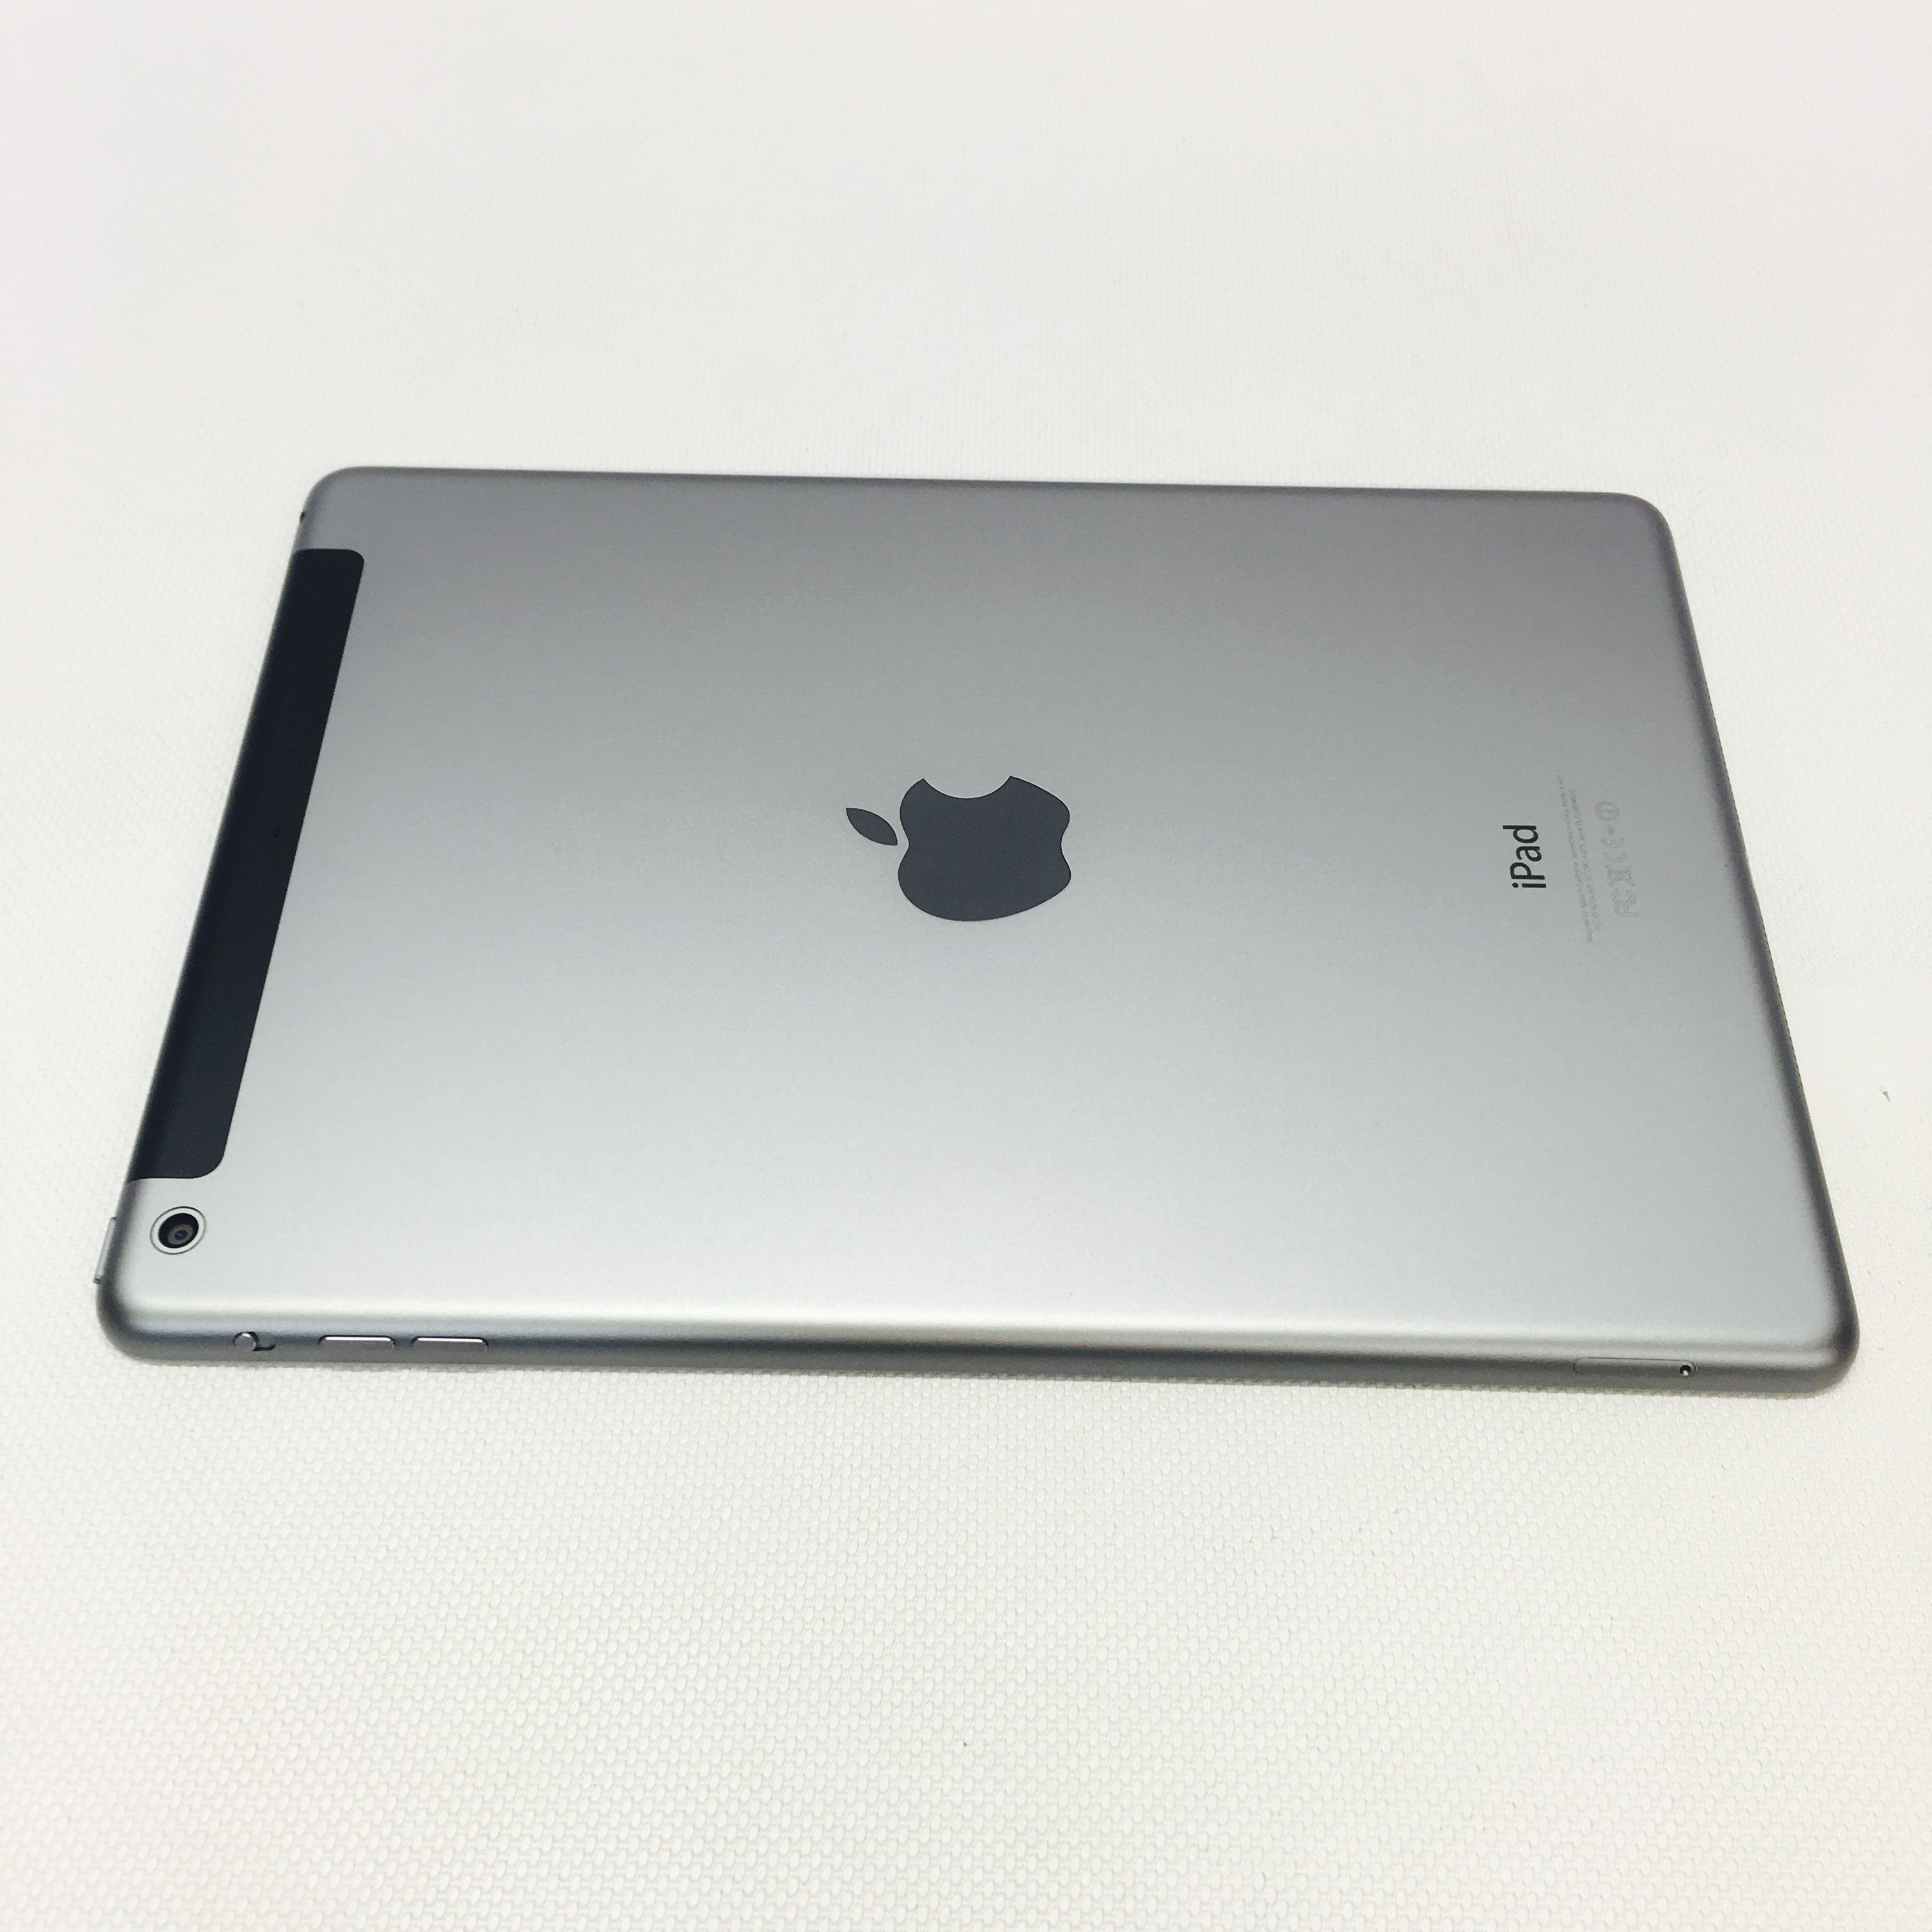 Fully Refurbished iPad Air 128GB Spae Grey Wi-Fi, Cellular 128GB / GRAY